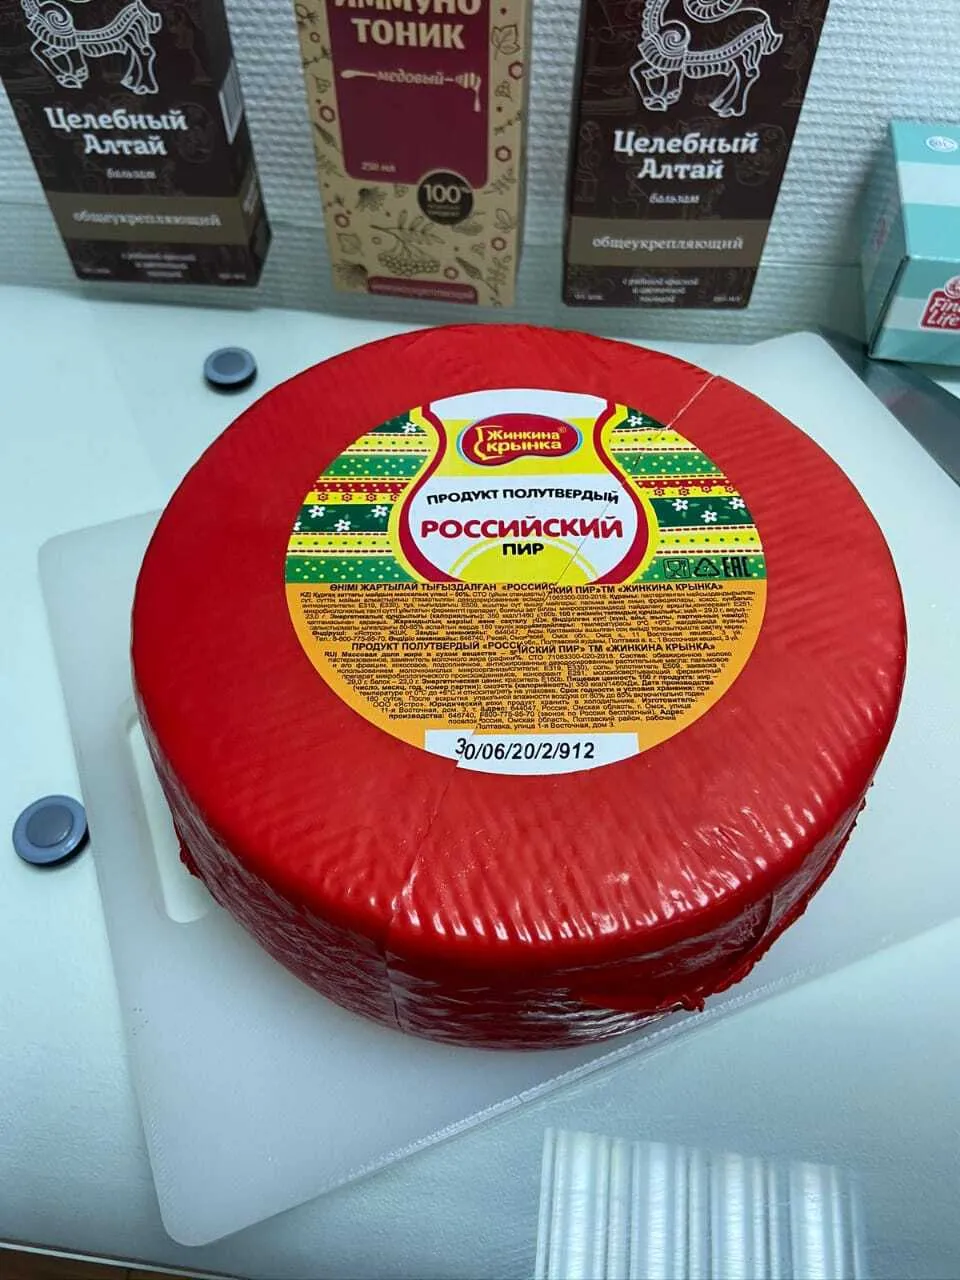 сыр, сырный продукт в Москве опт.цены в Москве 7